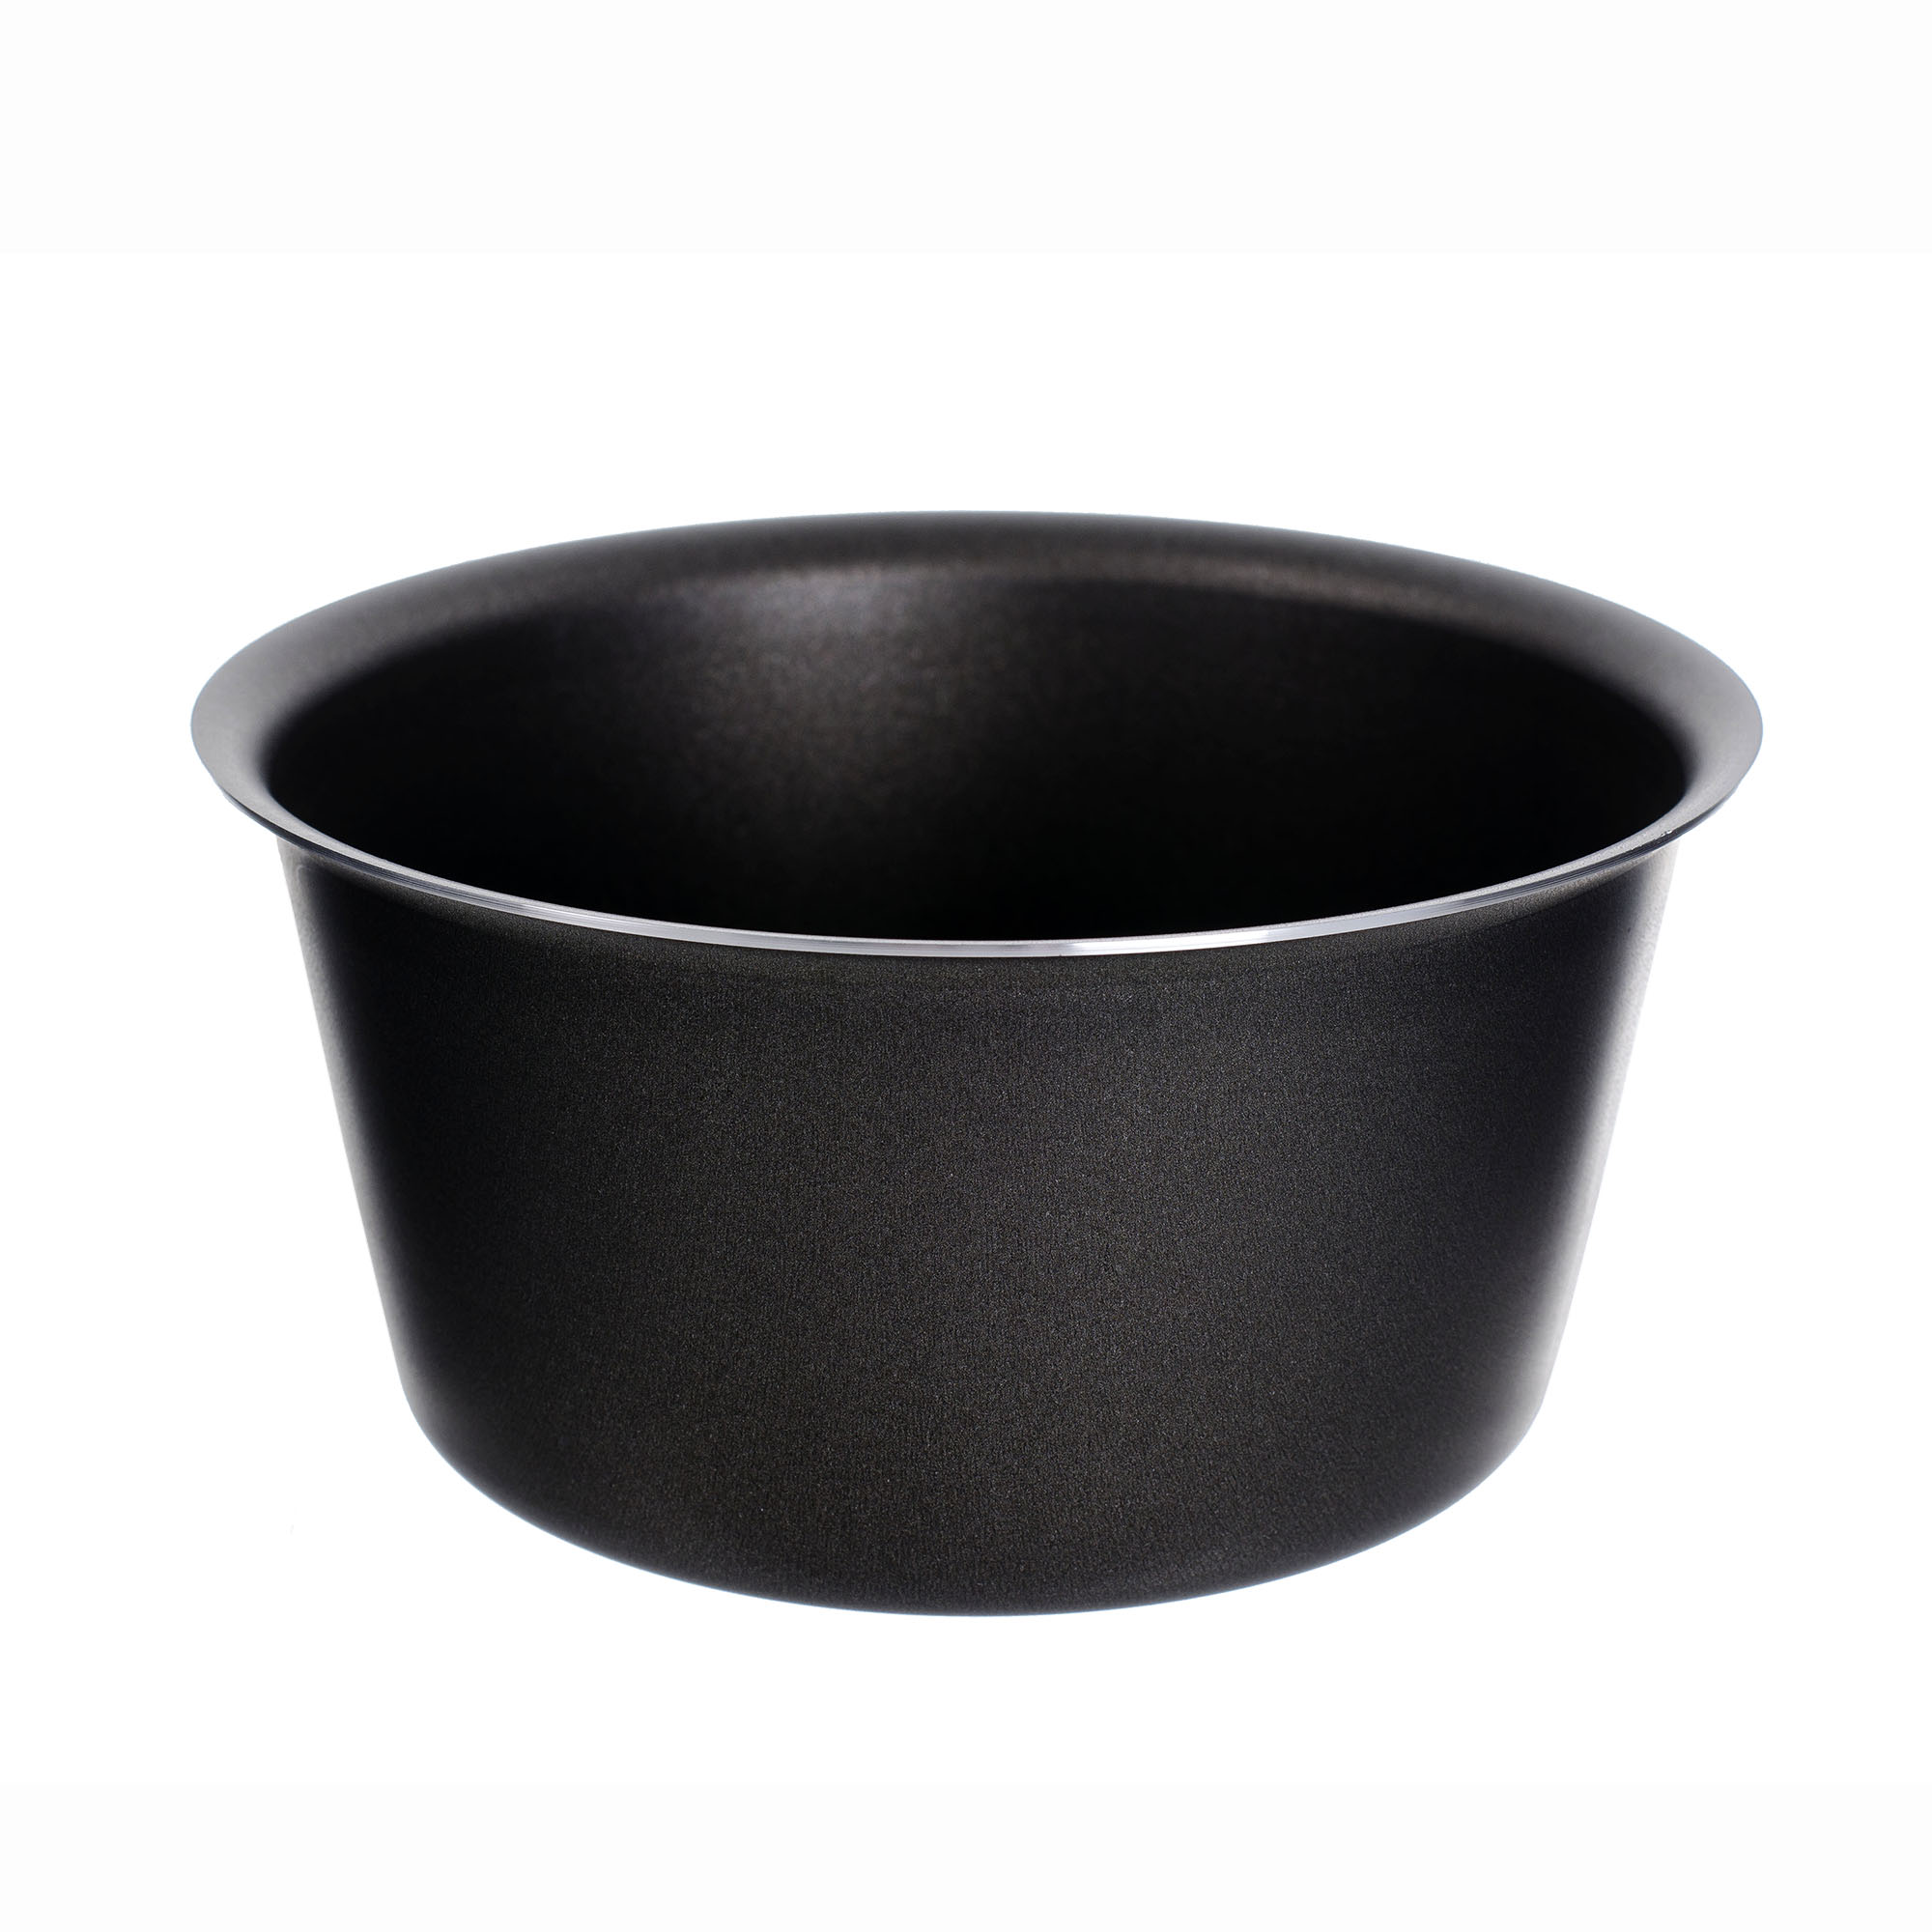 Форма для выпекания кулича Cucina Italiana 16 см, цвет черный - фото 1